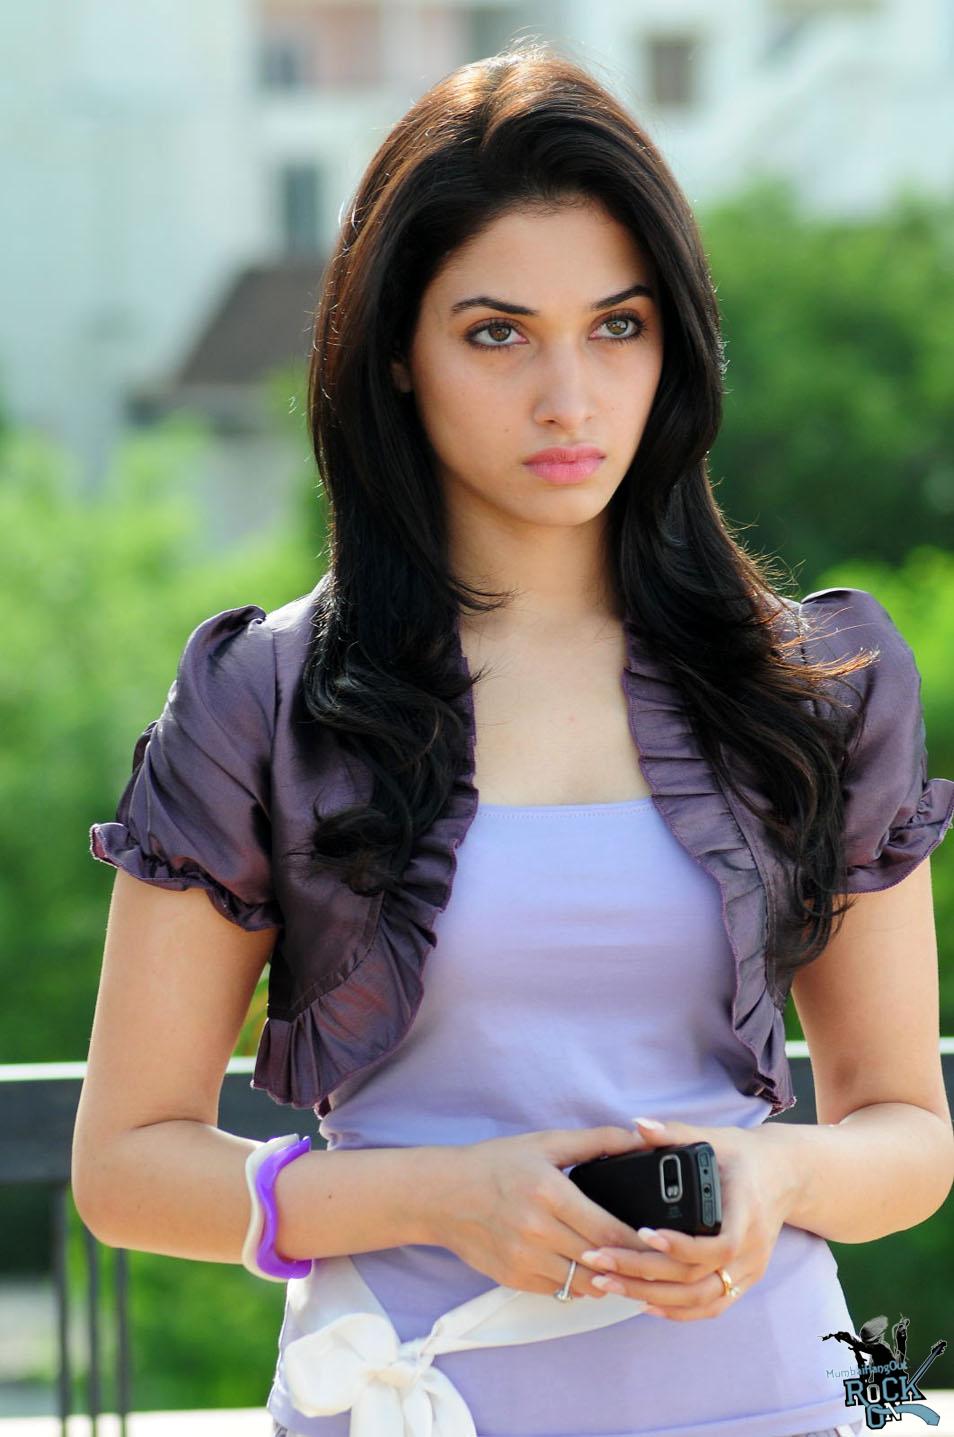 A Teen Hot Indian Actress Tamanna Bhatia Hot HD W